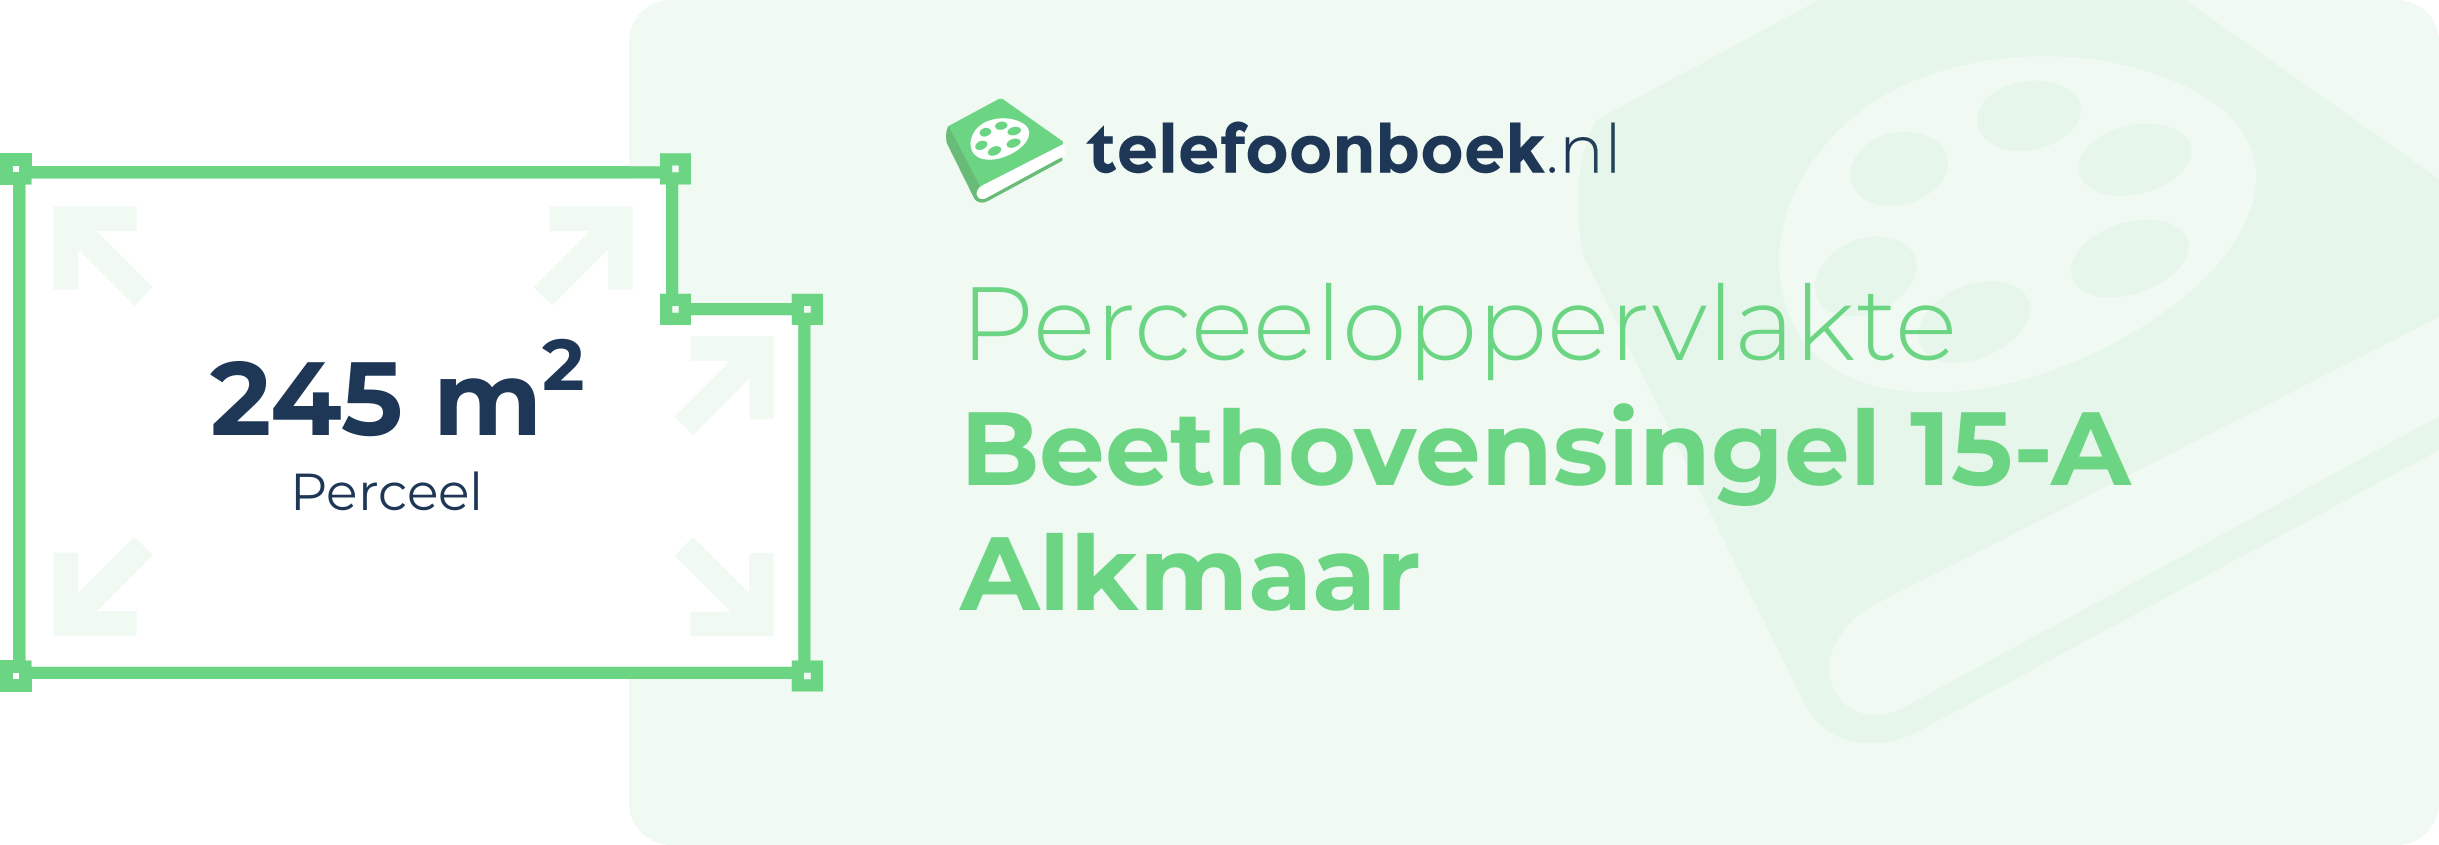 Perceeloppervlakte Beethovensingel 15-A Alkmaar